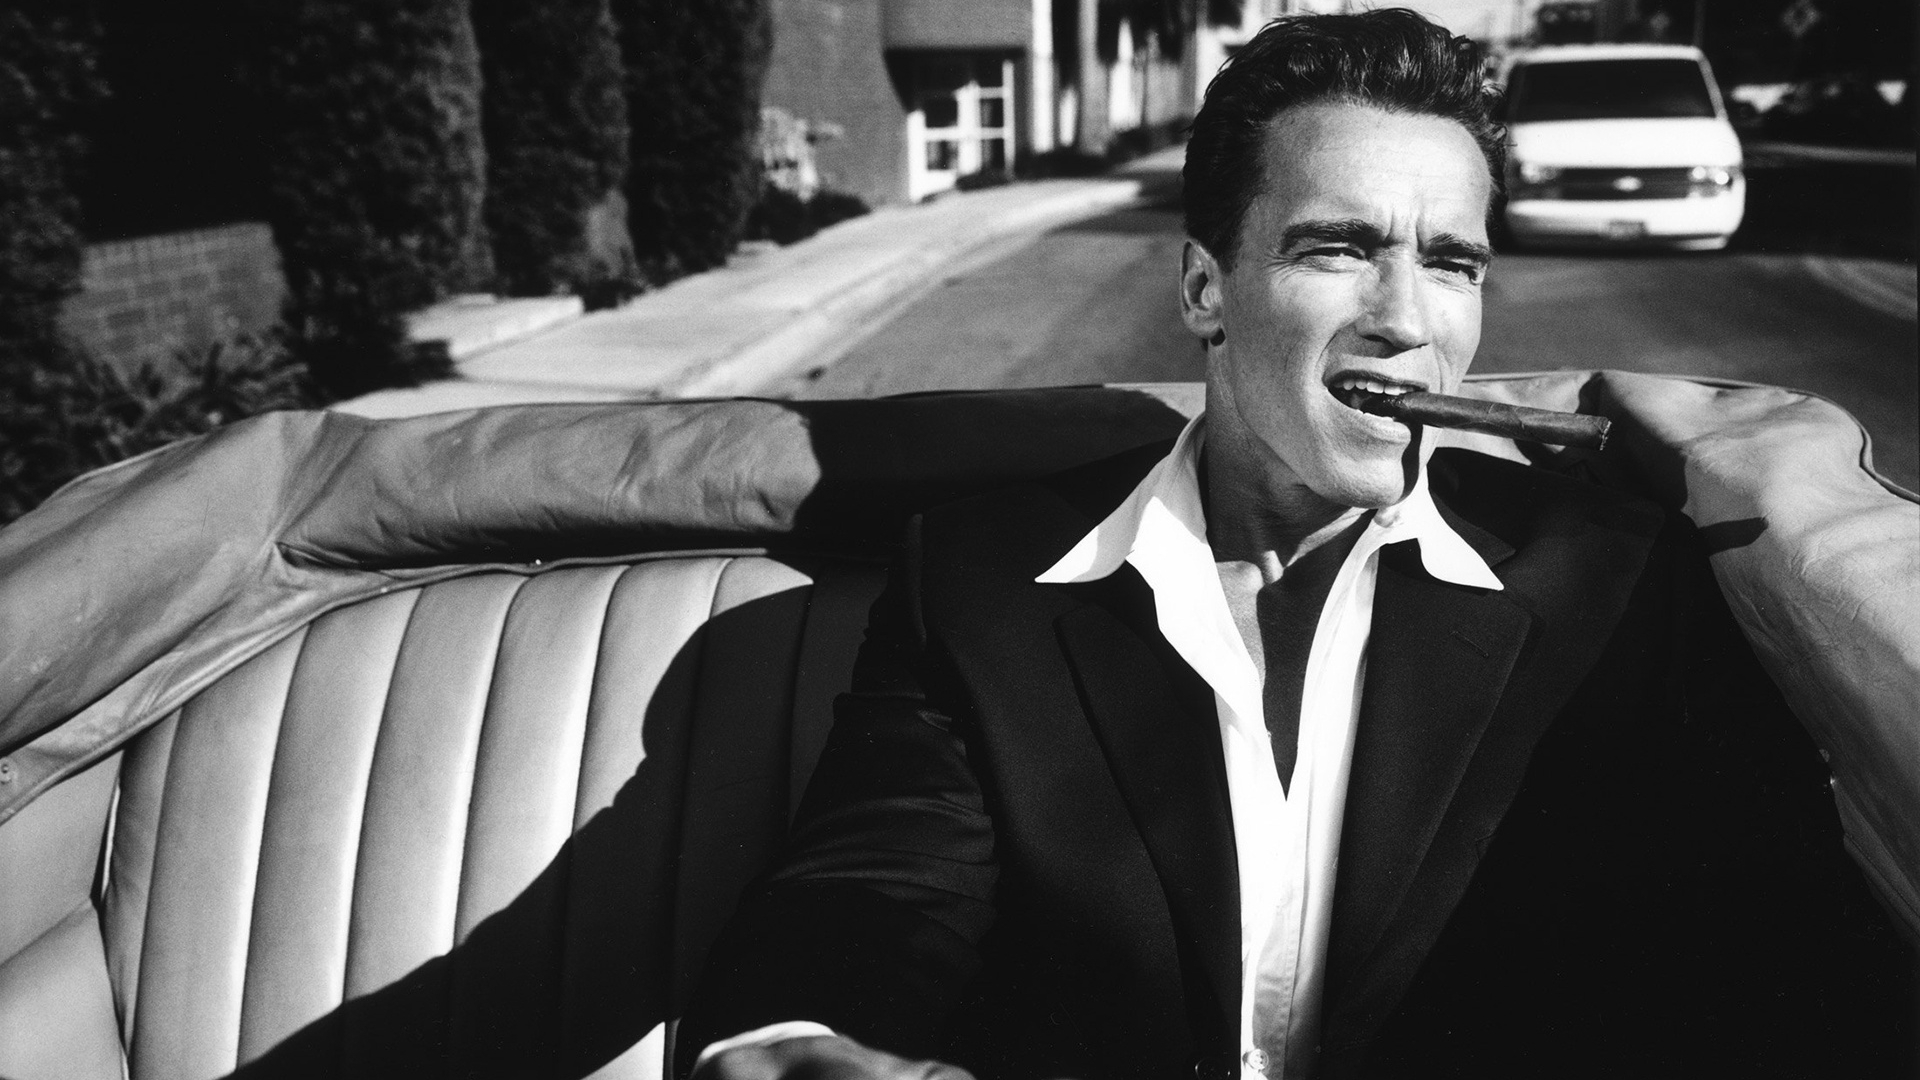 Men Arnold Schwarzenegger Actor Photography Vintage Car